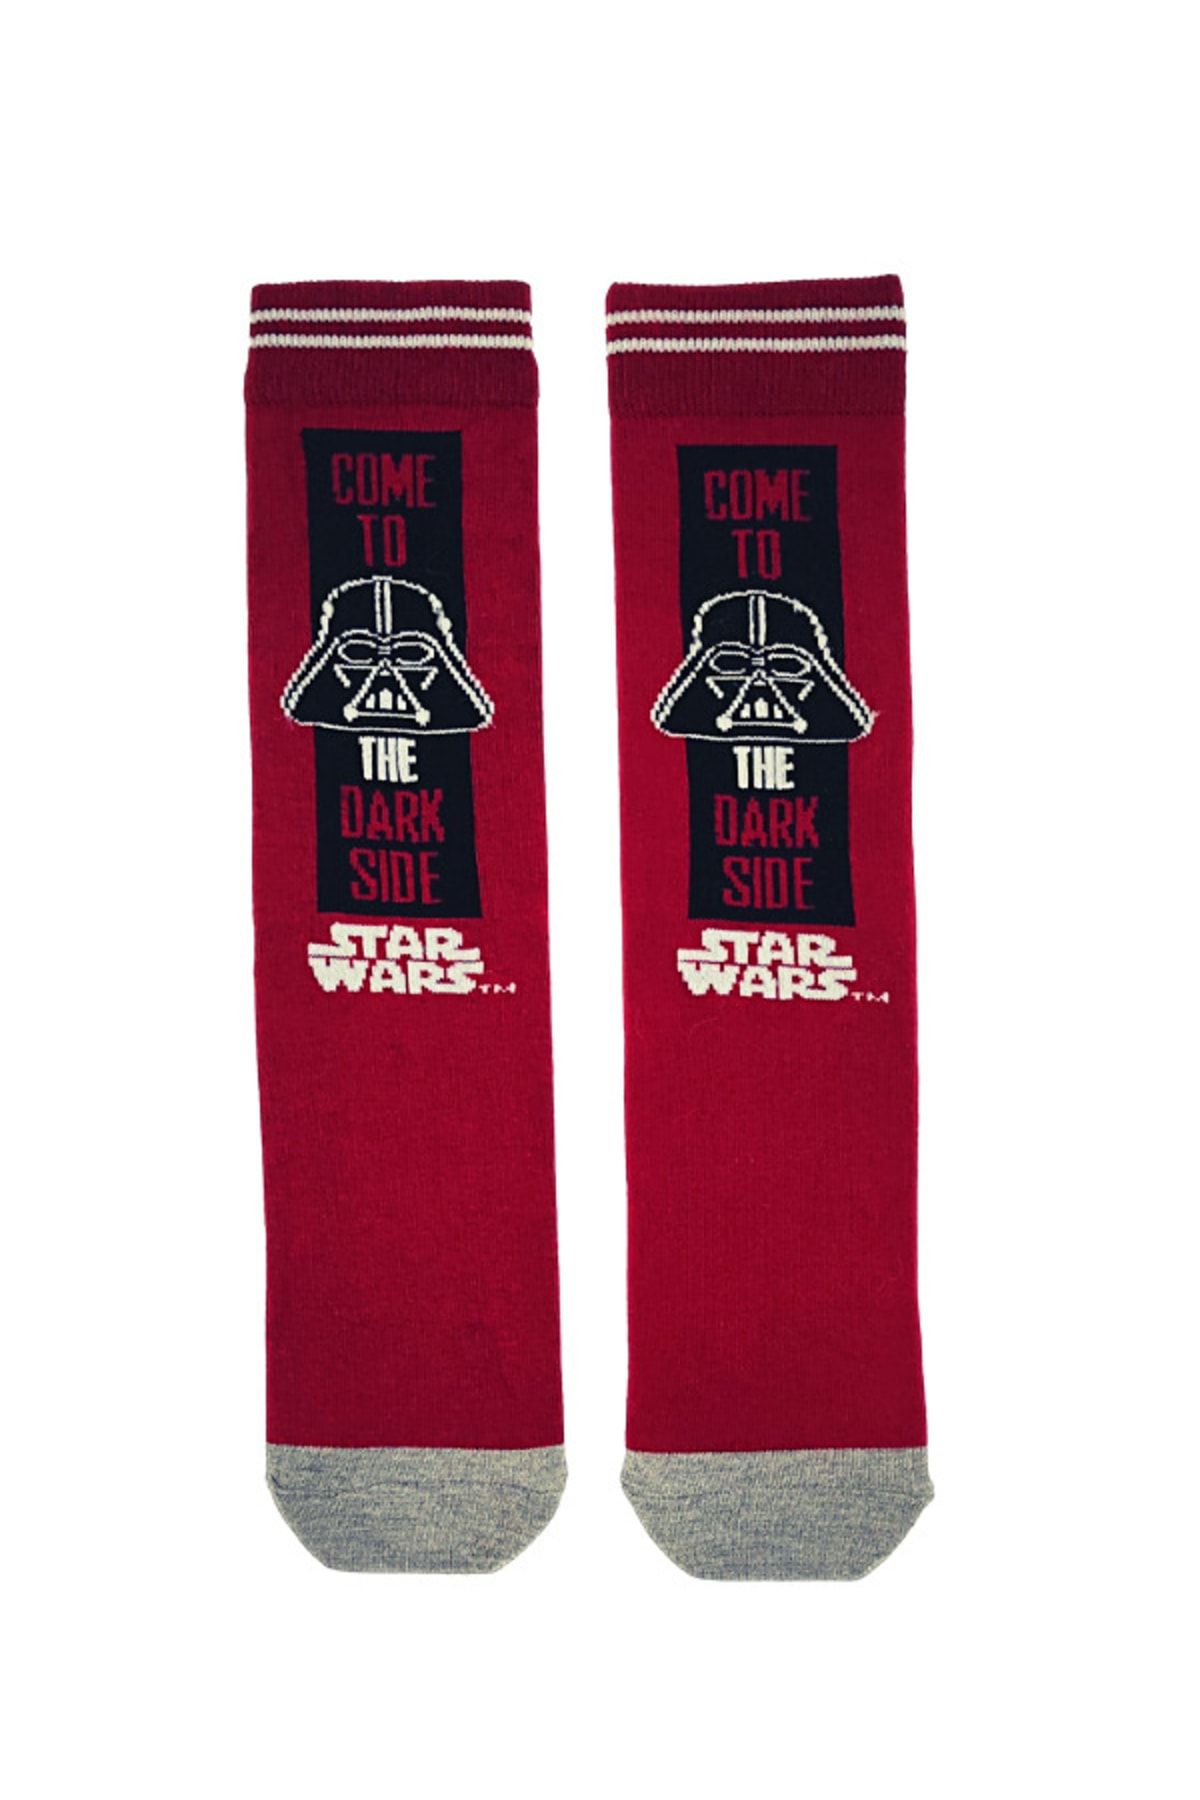 Happy Socks Ithal Özel Seri Unisex Star Wars Darth Vader Renkli Soket Çorap